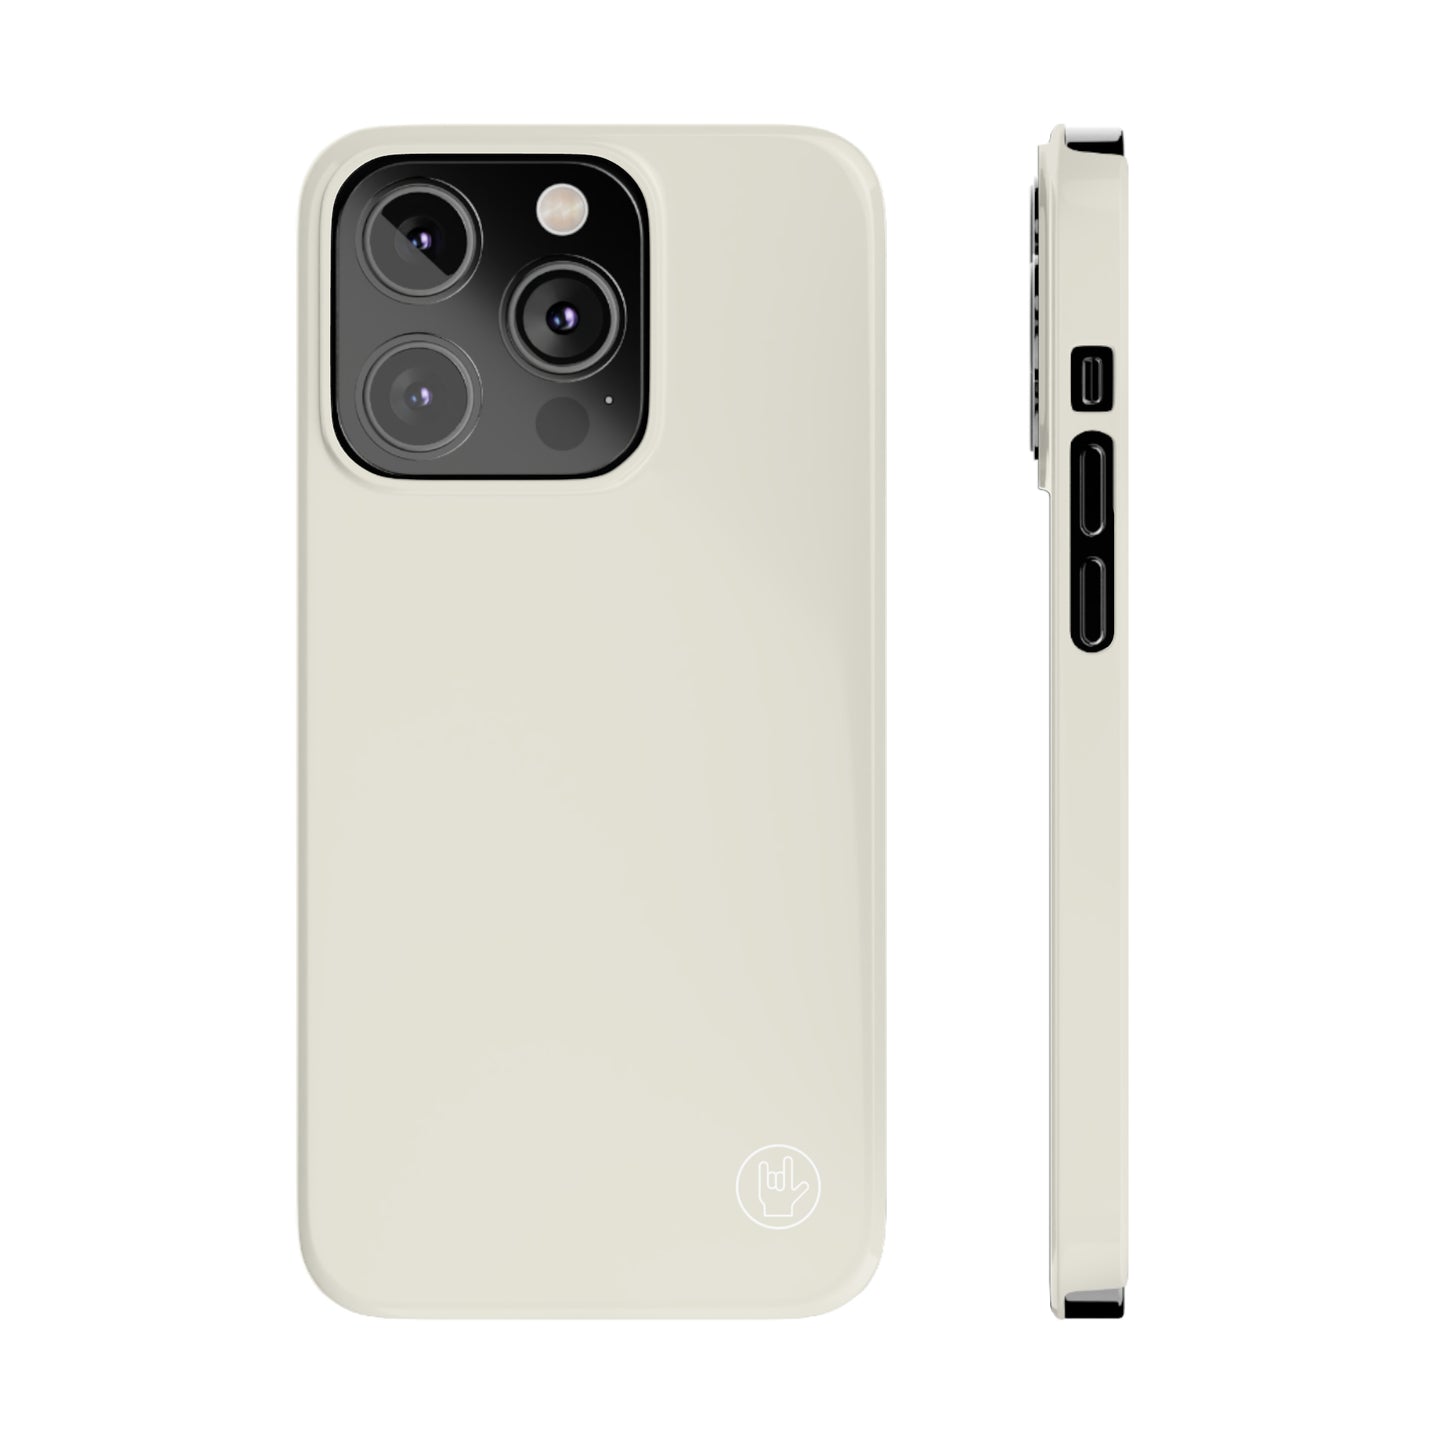 Off White Phone Case - Solid Color Phone Case - Premium Slim Phone Case